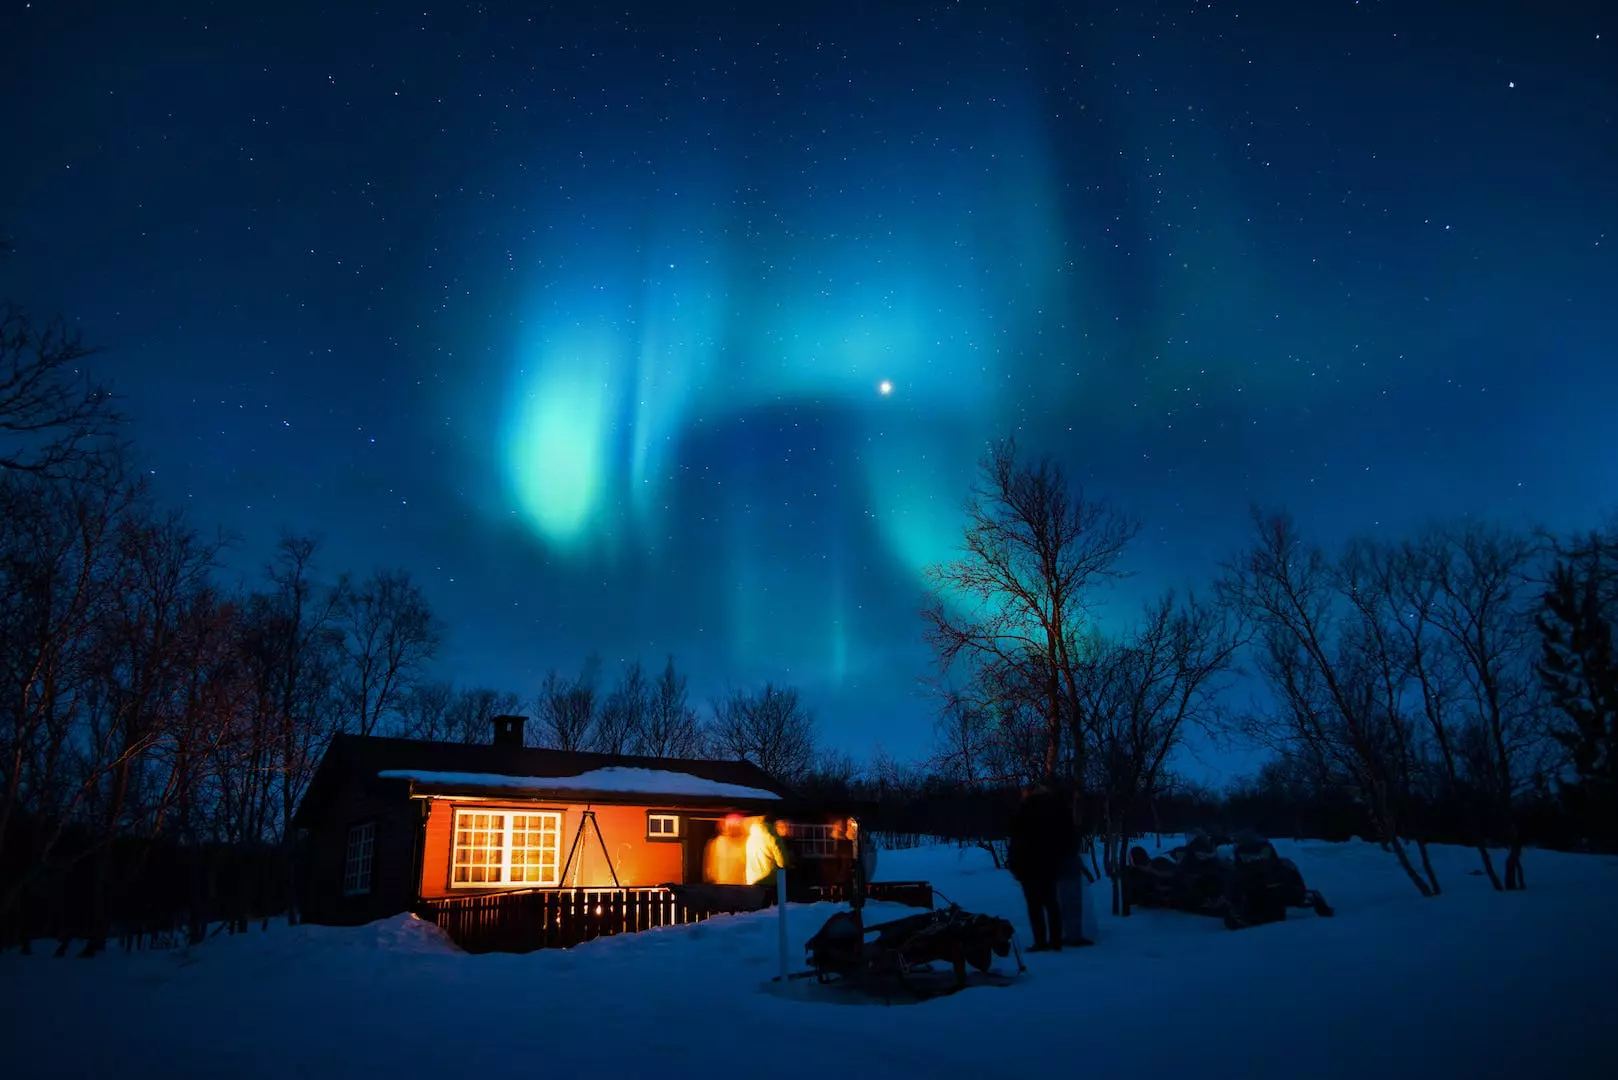 Introduksjon til nordlys: Å forstå den spektakulære himmelbegivenheten